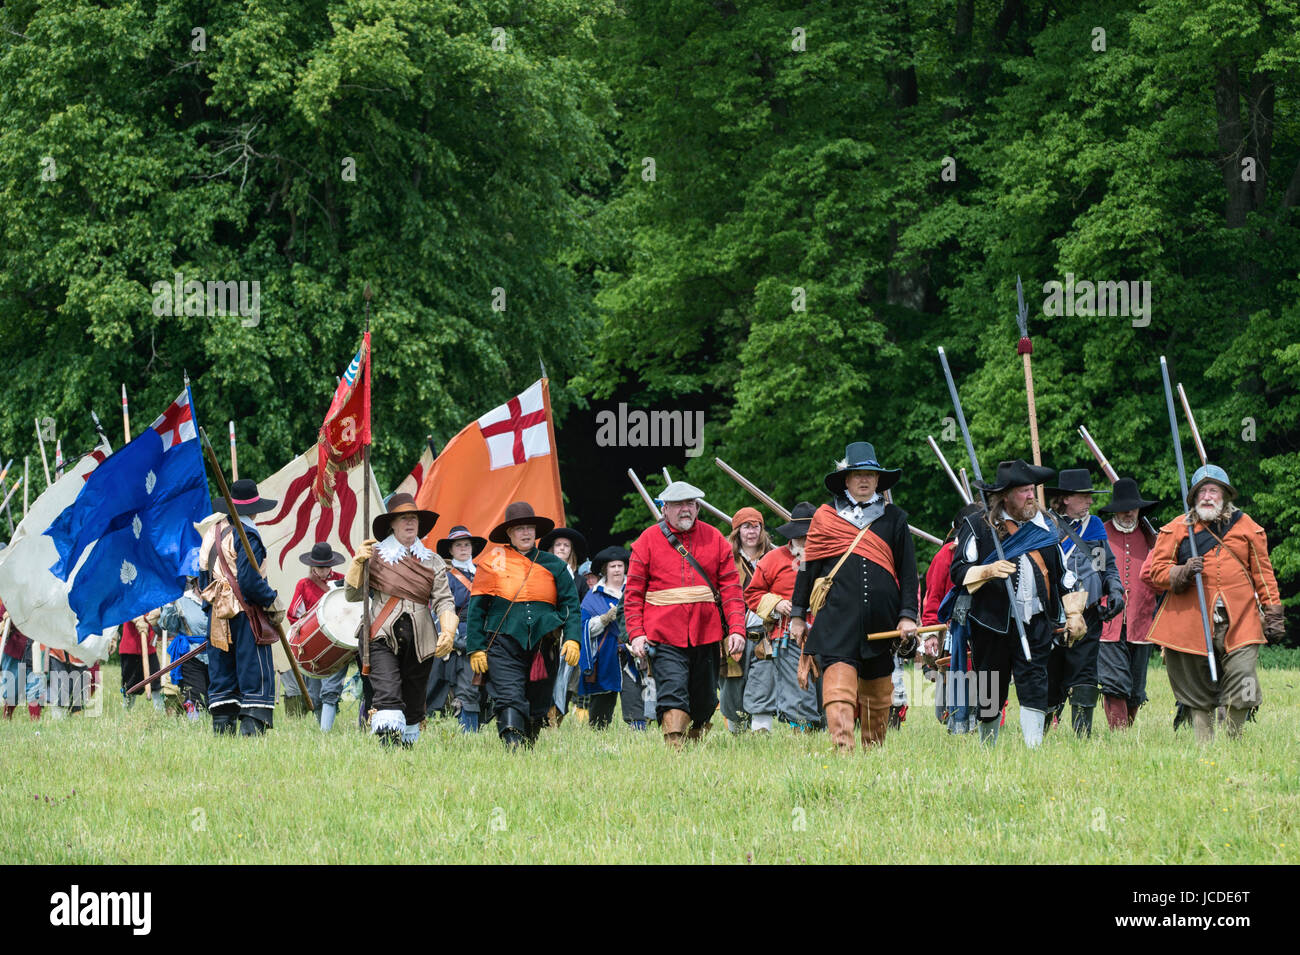 Royalistische Armee / Cavaliers marschieren in die Schlacht bei einem Sealed Knot englischen Civil War Reenactment Event. Charlton Park, Malmesbury, Wiltshire, UK. Stockfoto